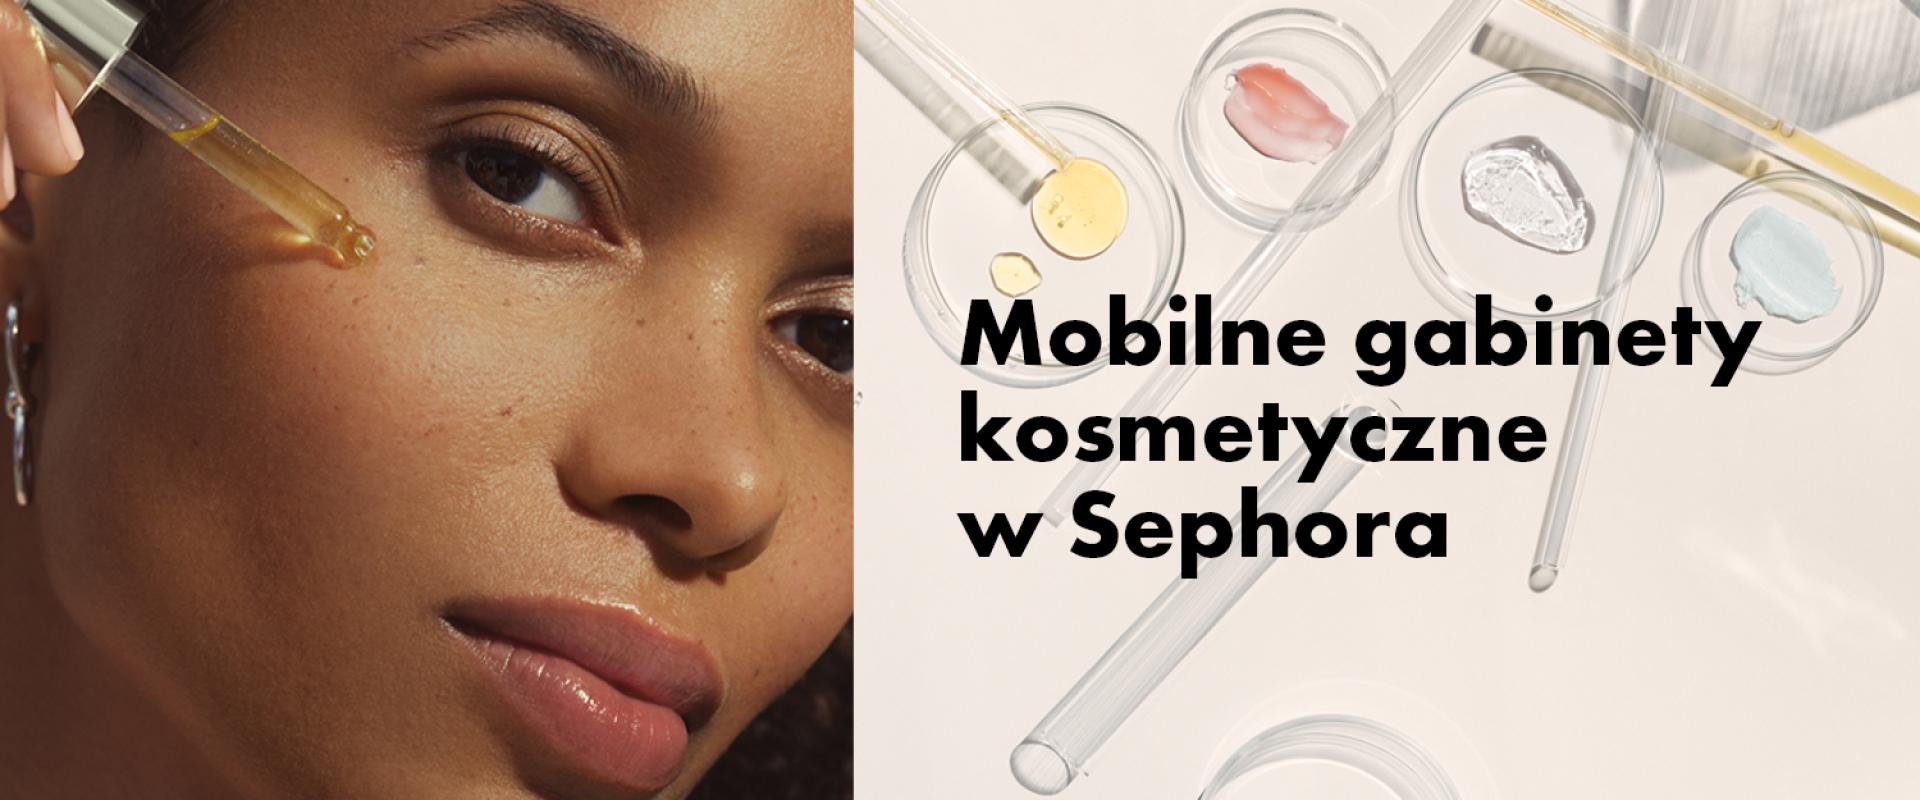 Mobilne gabinety kosmetyczne oferta indywidualnych konsultacji premium w Sephora